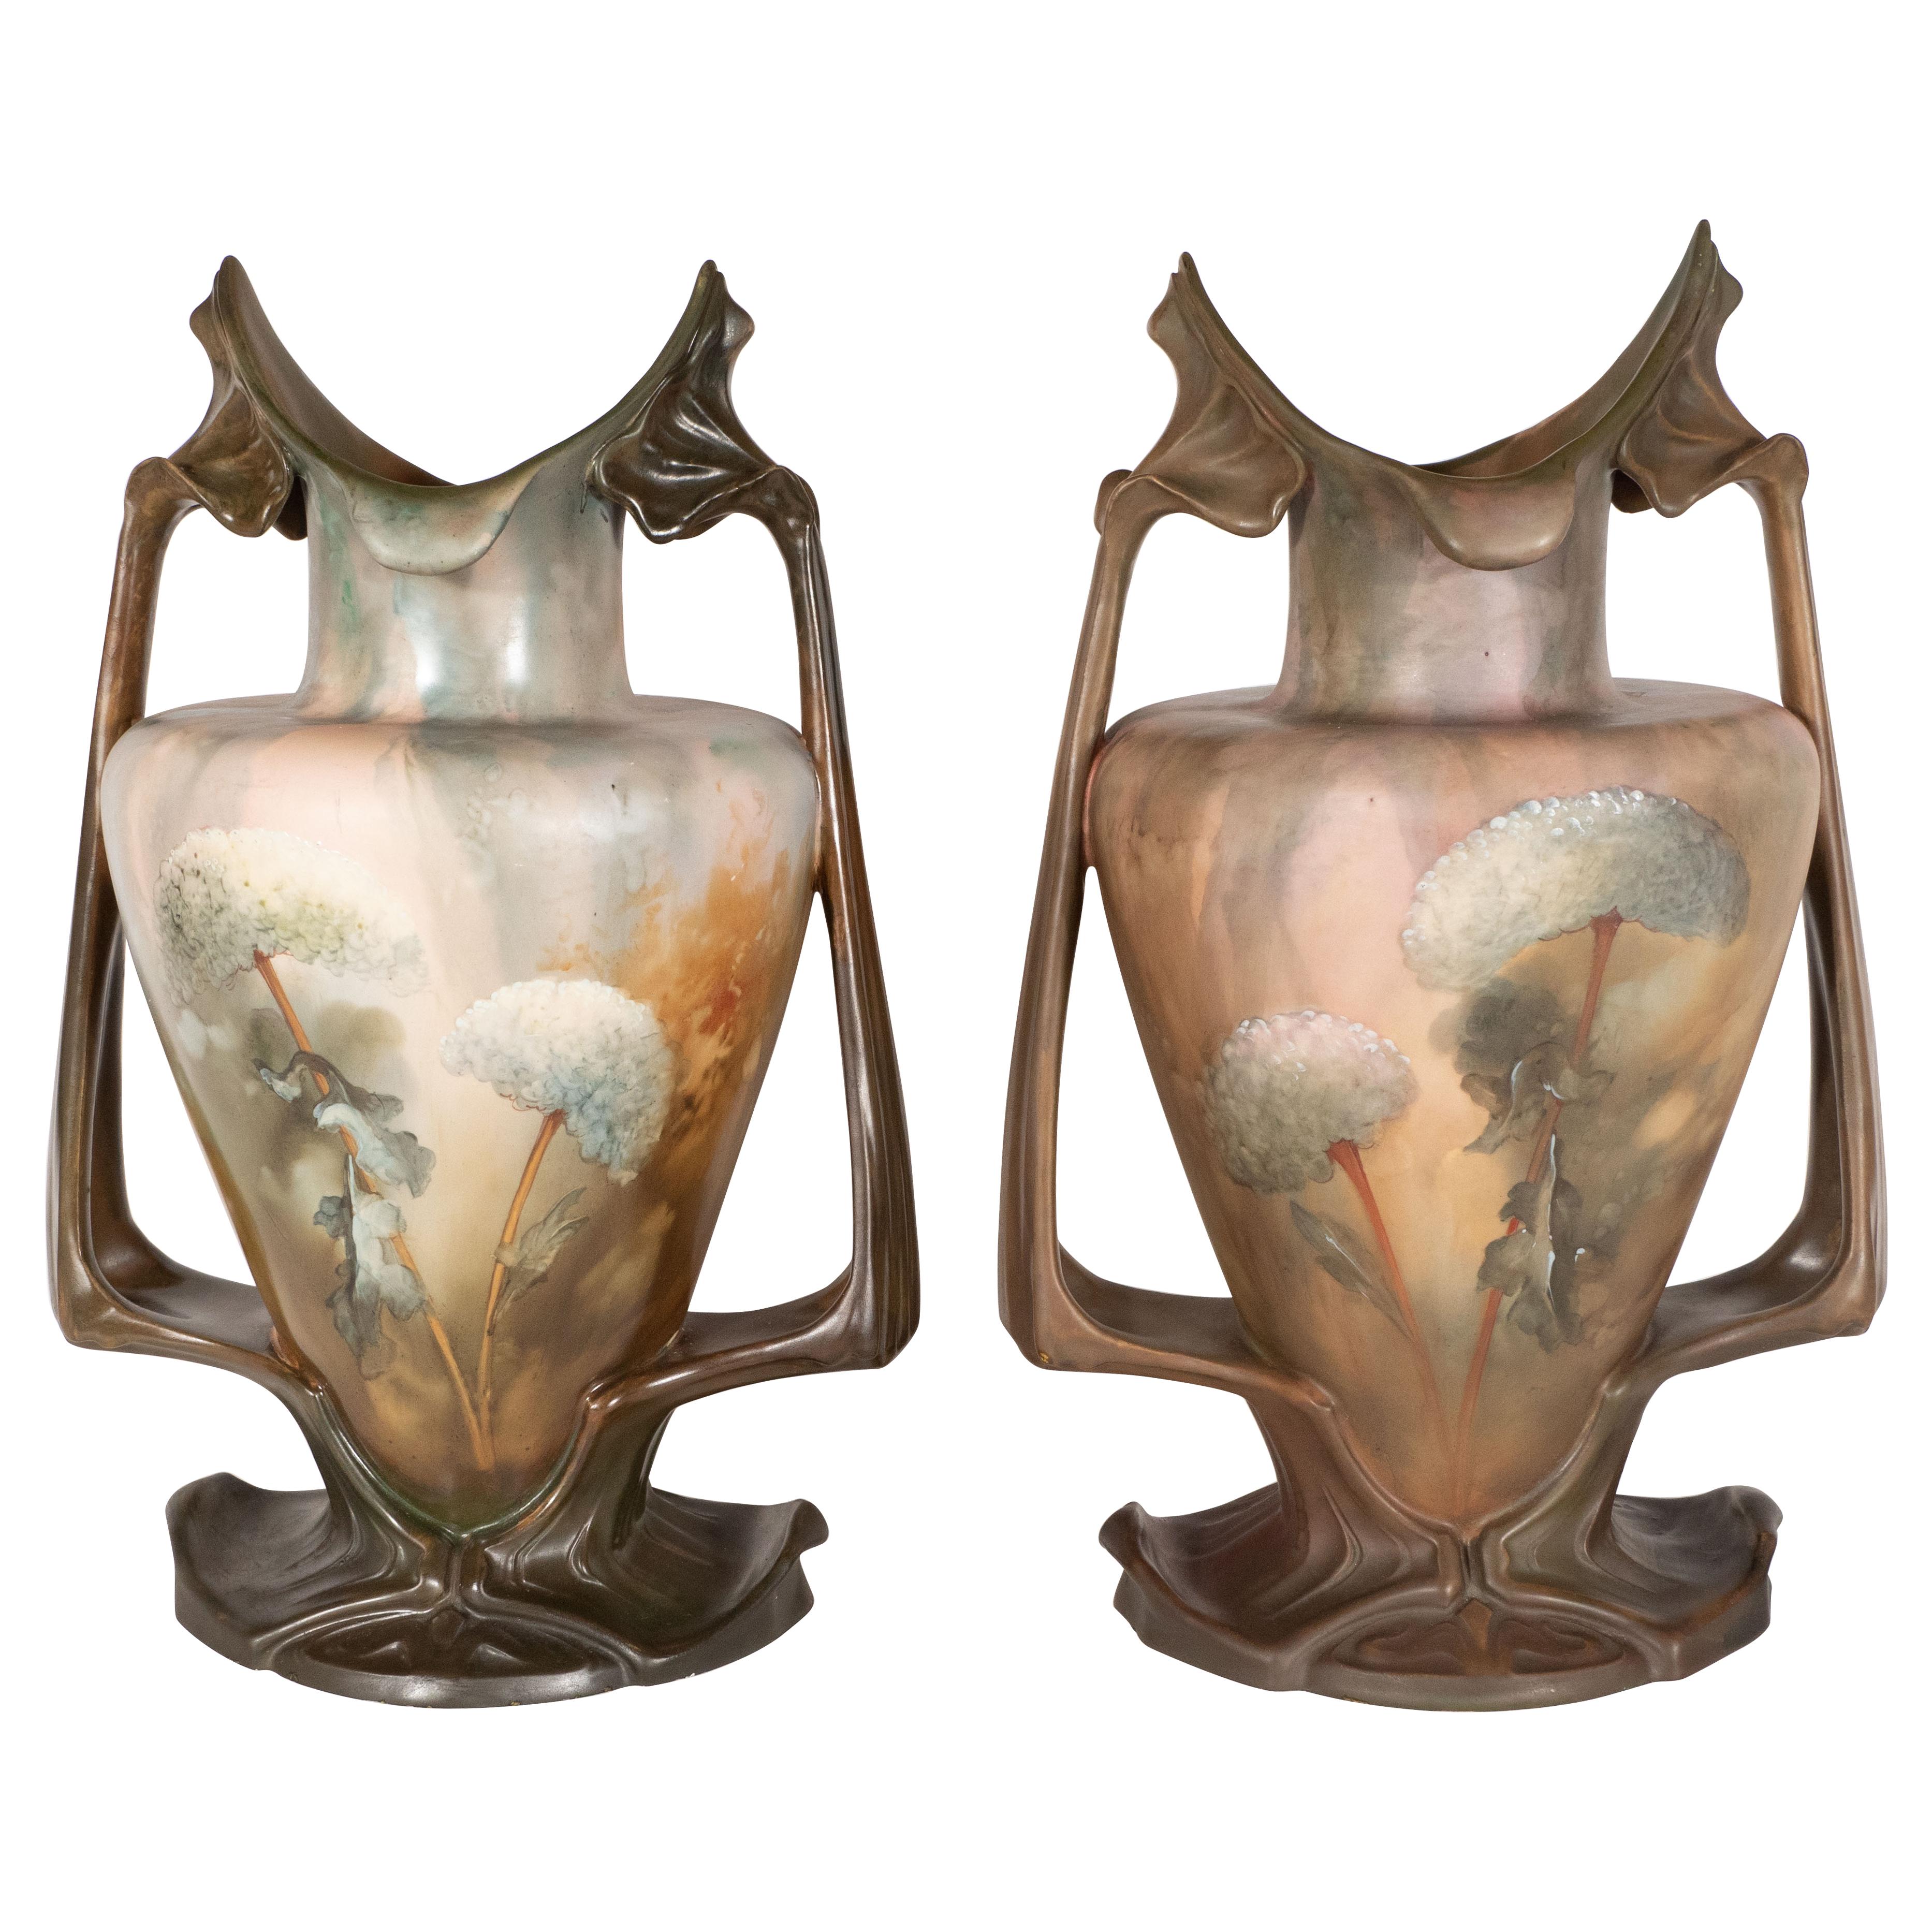 Pair of Art Nouveau Hand Painted Sculptural Ceramic Vases by Royal Bonn